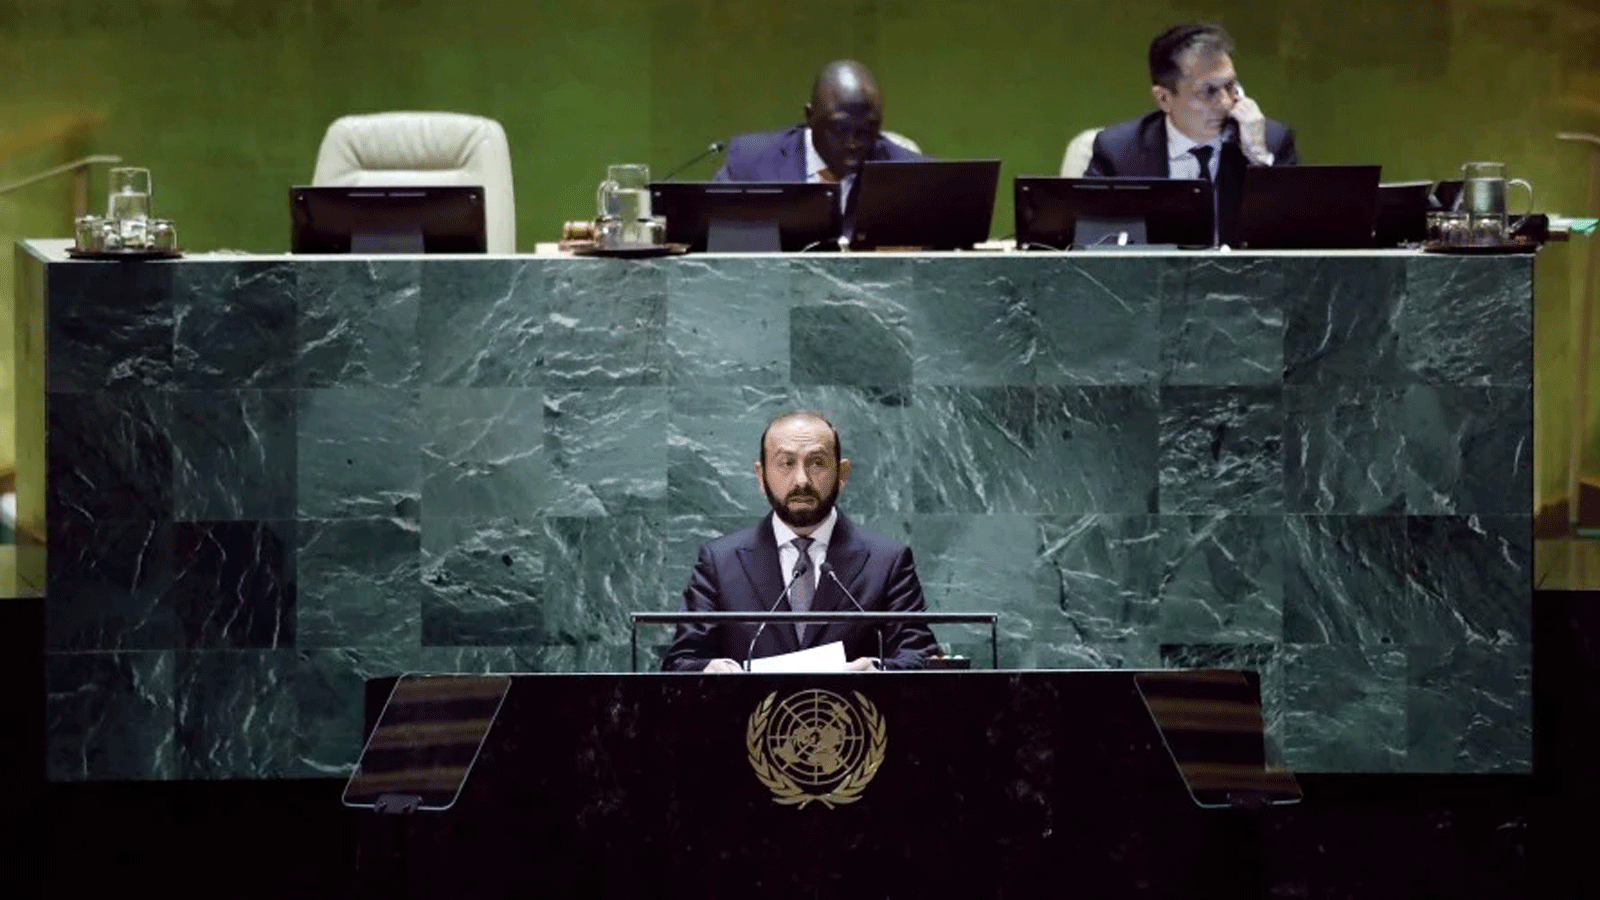 وزير الخارجية الأرميني أرارات ميرزويان يُلقي كلمة أمام الدورة الـ78 للجمعية العامة للأمم المتحدة في مقرّ الأمم المتحدة بمدينة نيويورك